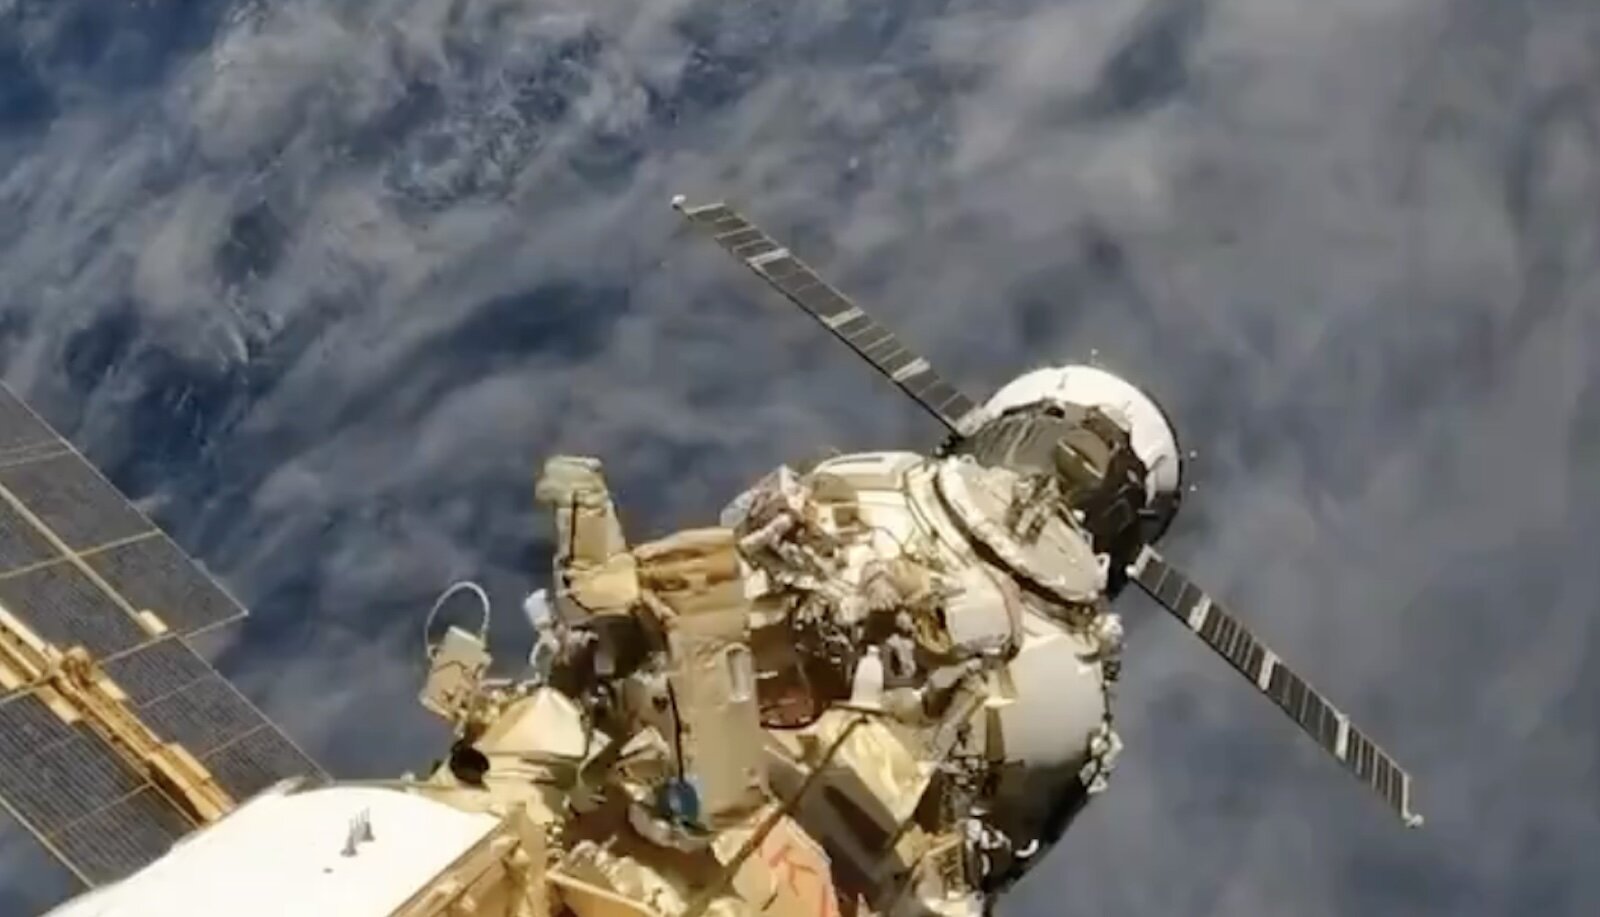 Работа космонавтов за бортом МКС: не смотреть тем, кто боится высоты